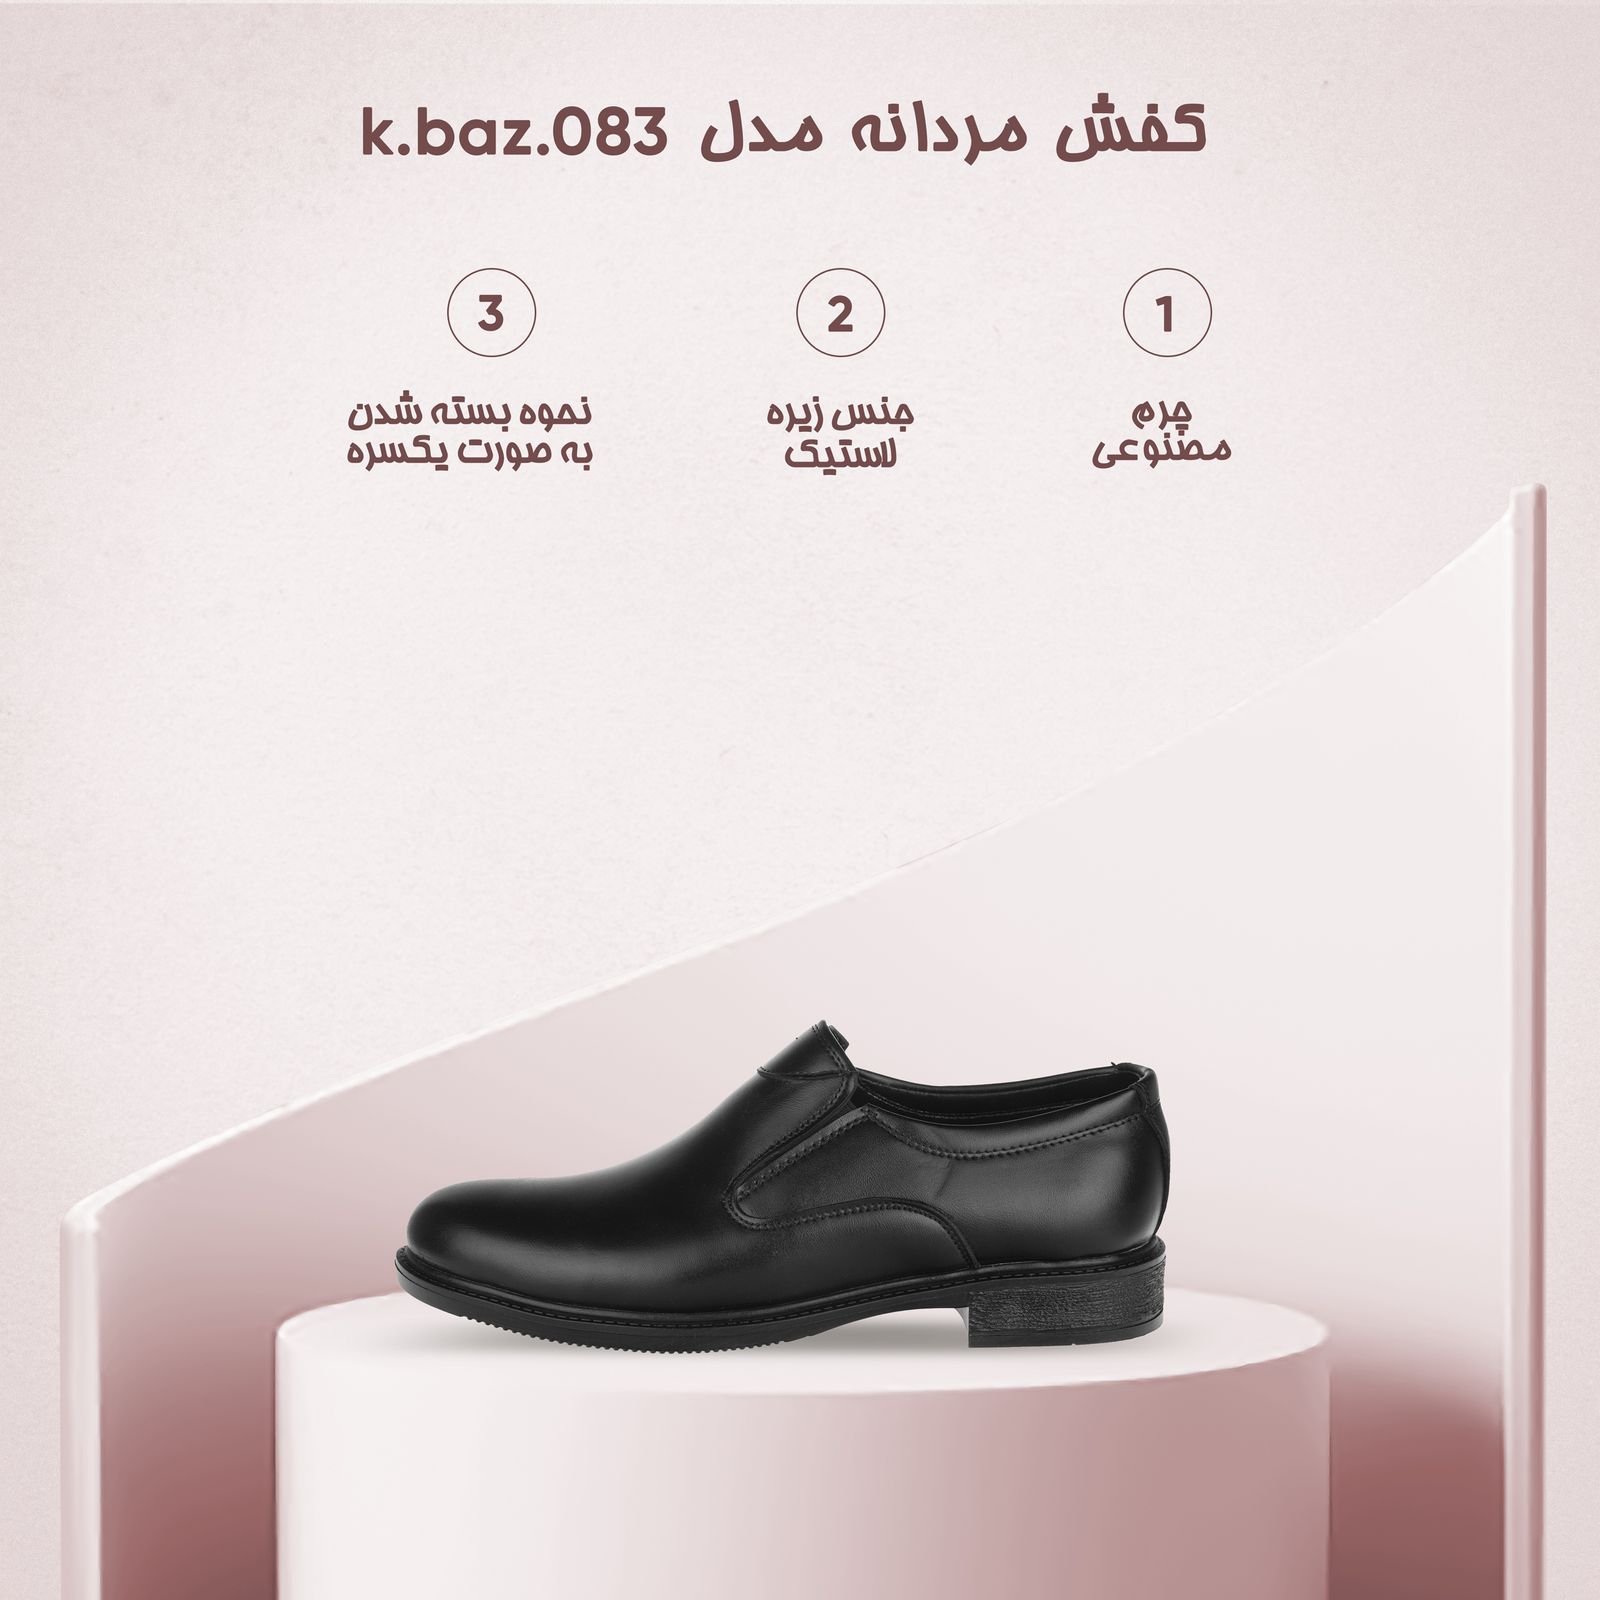 کفش مردانه مدل k.baz.083 -  - 8